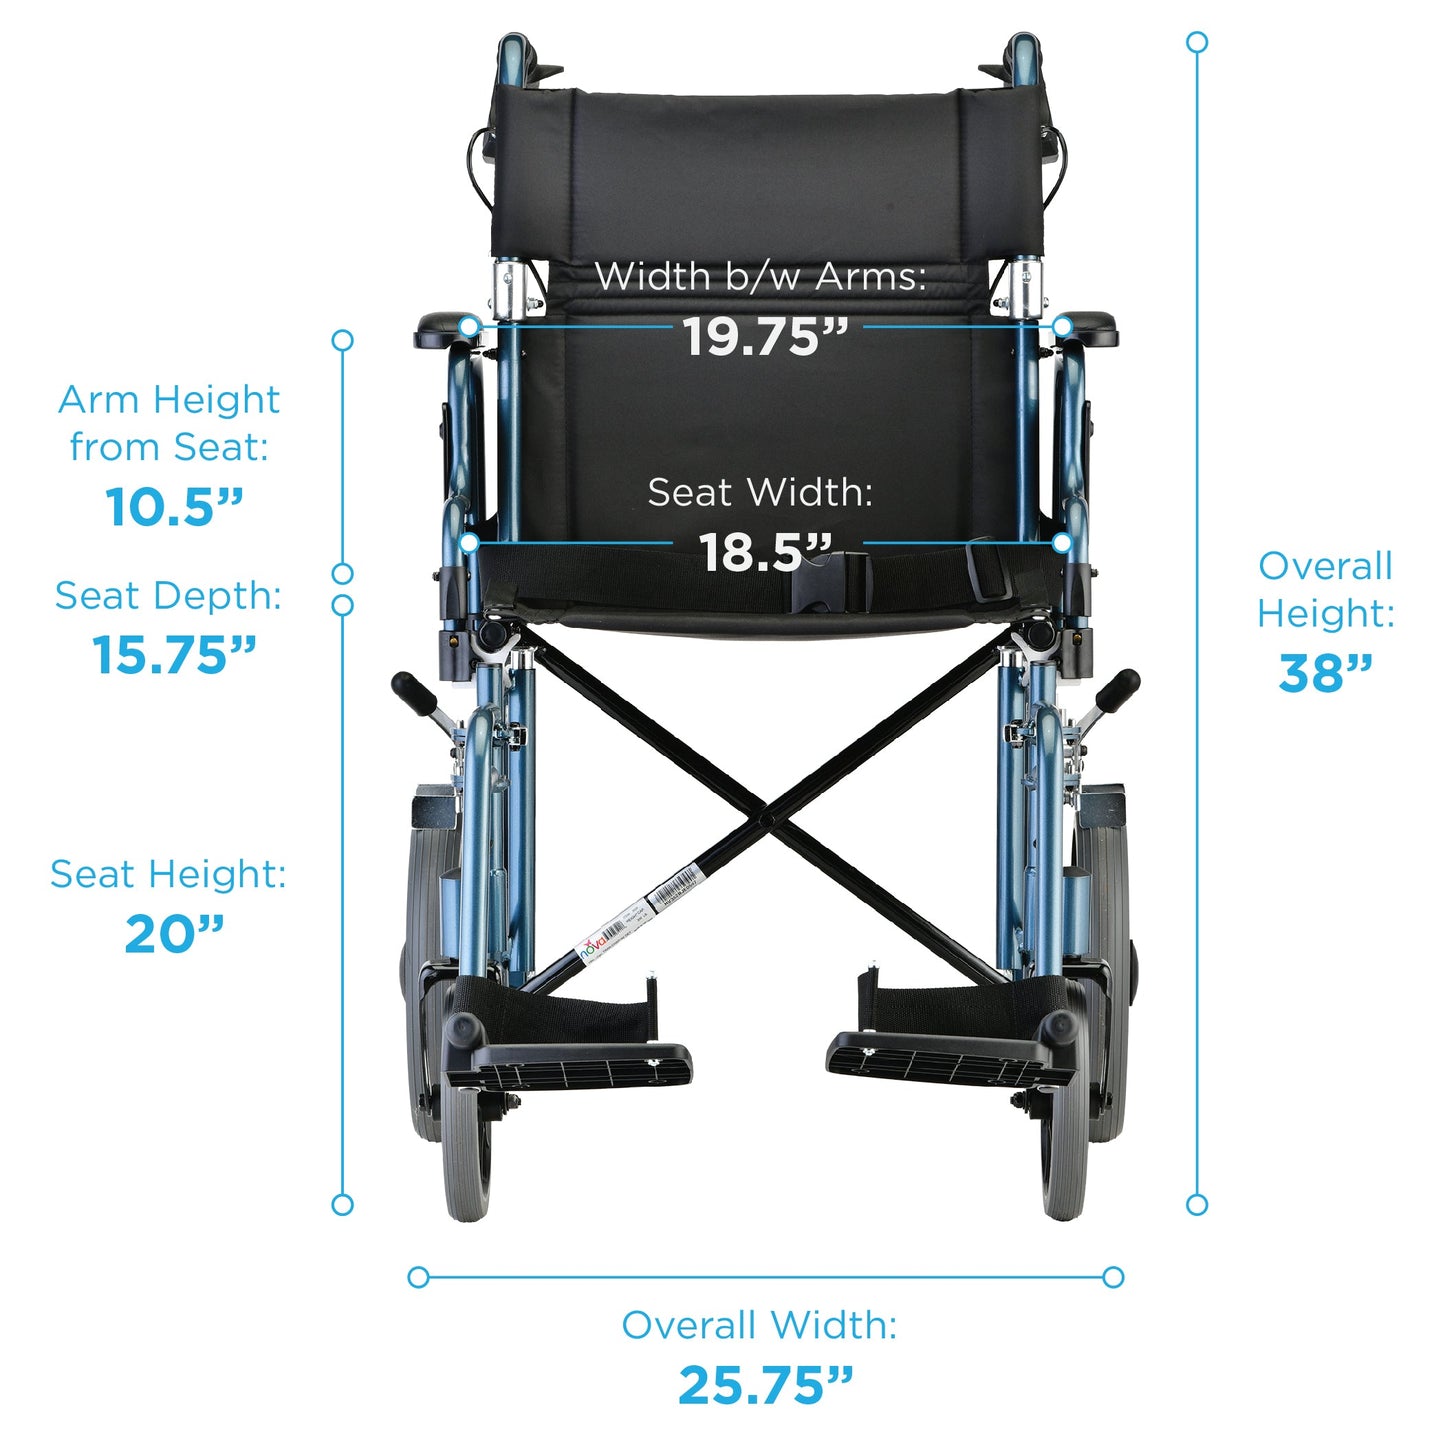 NOVA 352 Transport Chair with 12" Wheels & Flip Up Armrests